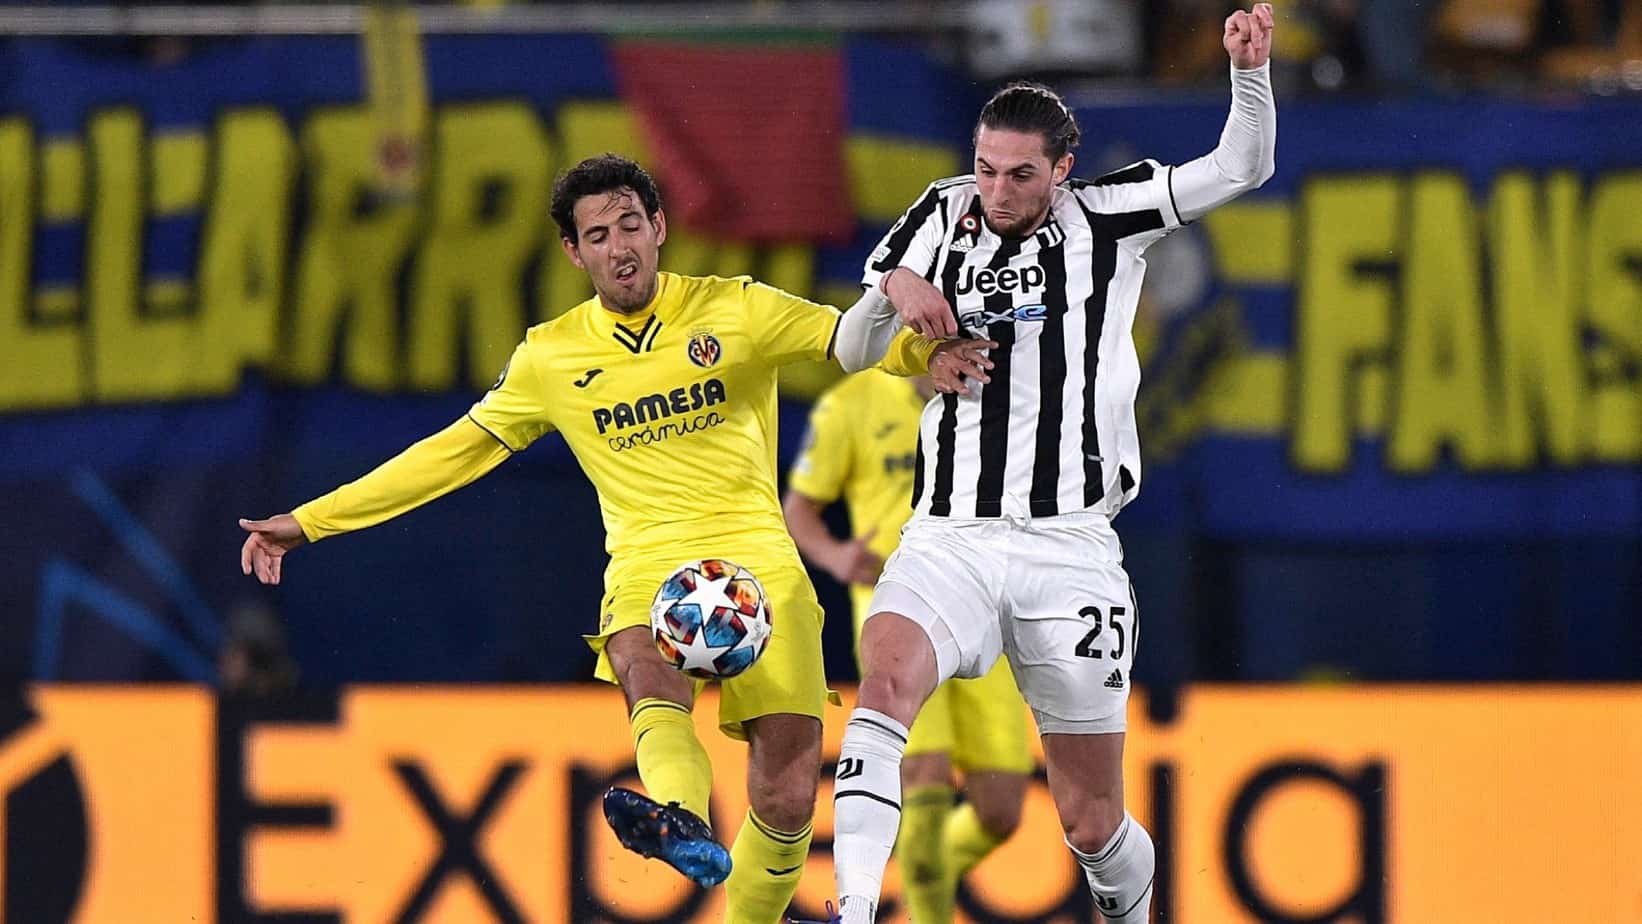 Villarreal (1) vs. Juventus (1) – Results